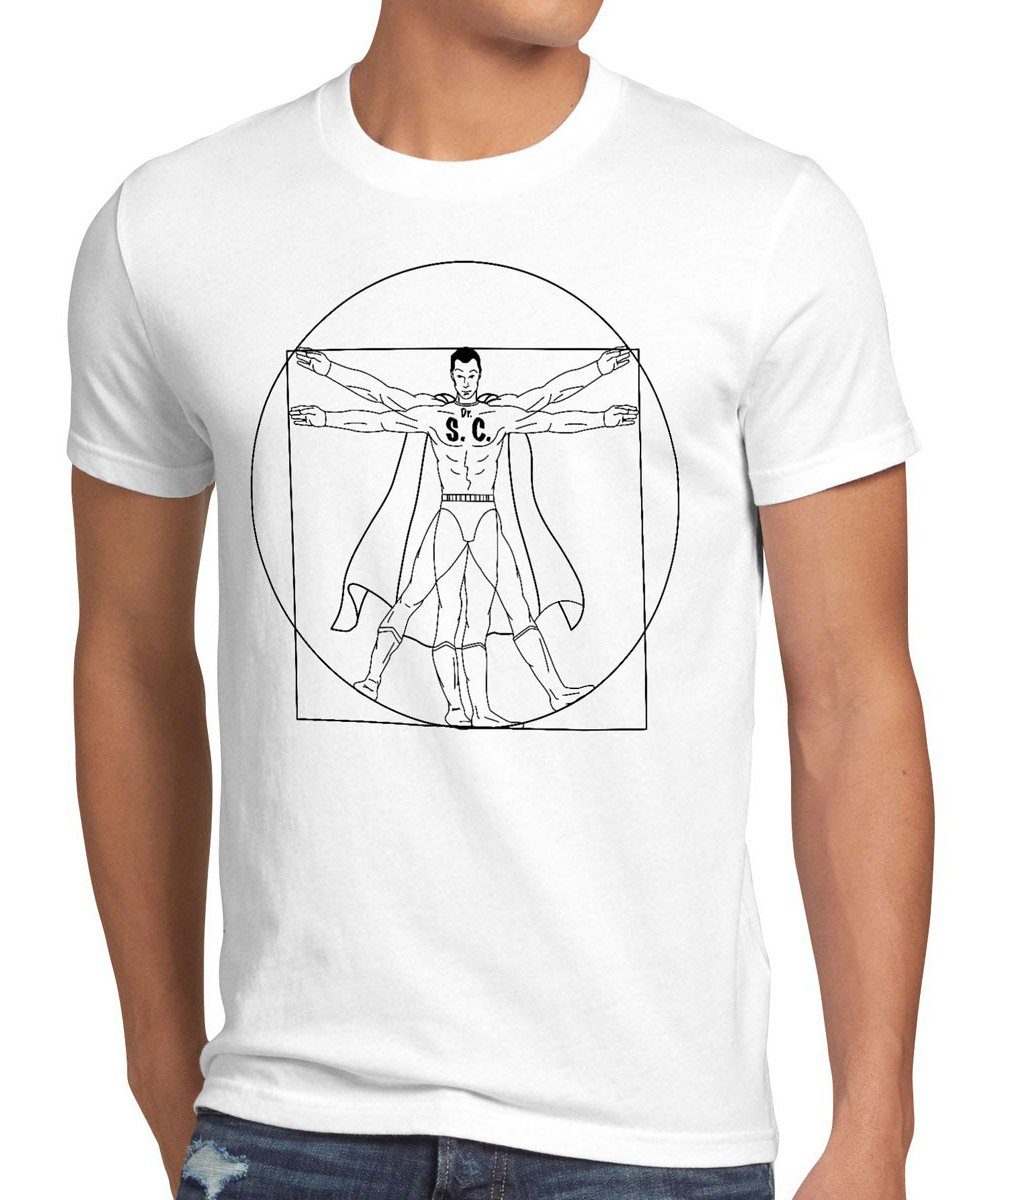 style3 Print-Shirt Herren T-Shirt Sheldon theory Da Vinci Cooper big bang Vitruvianischer Mensch weiß